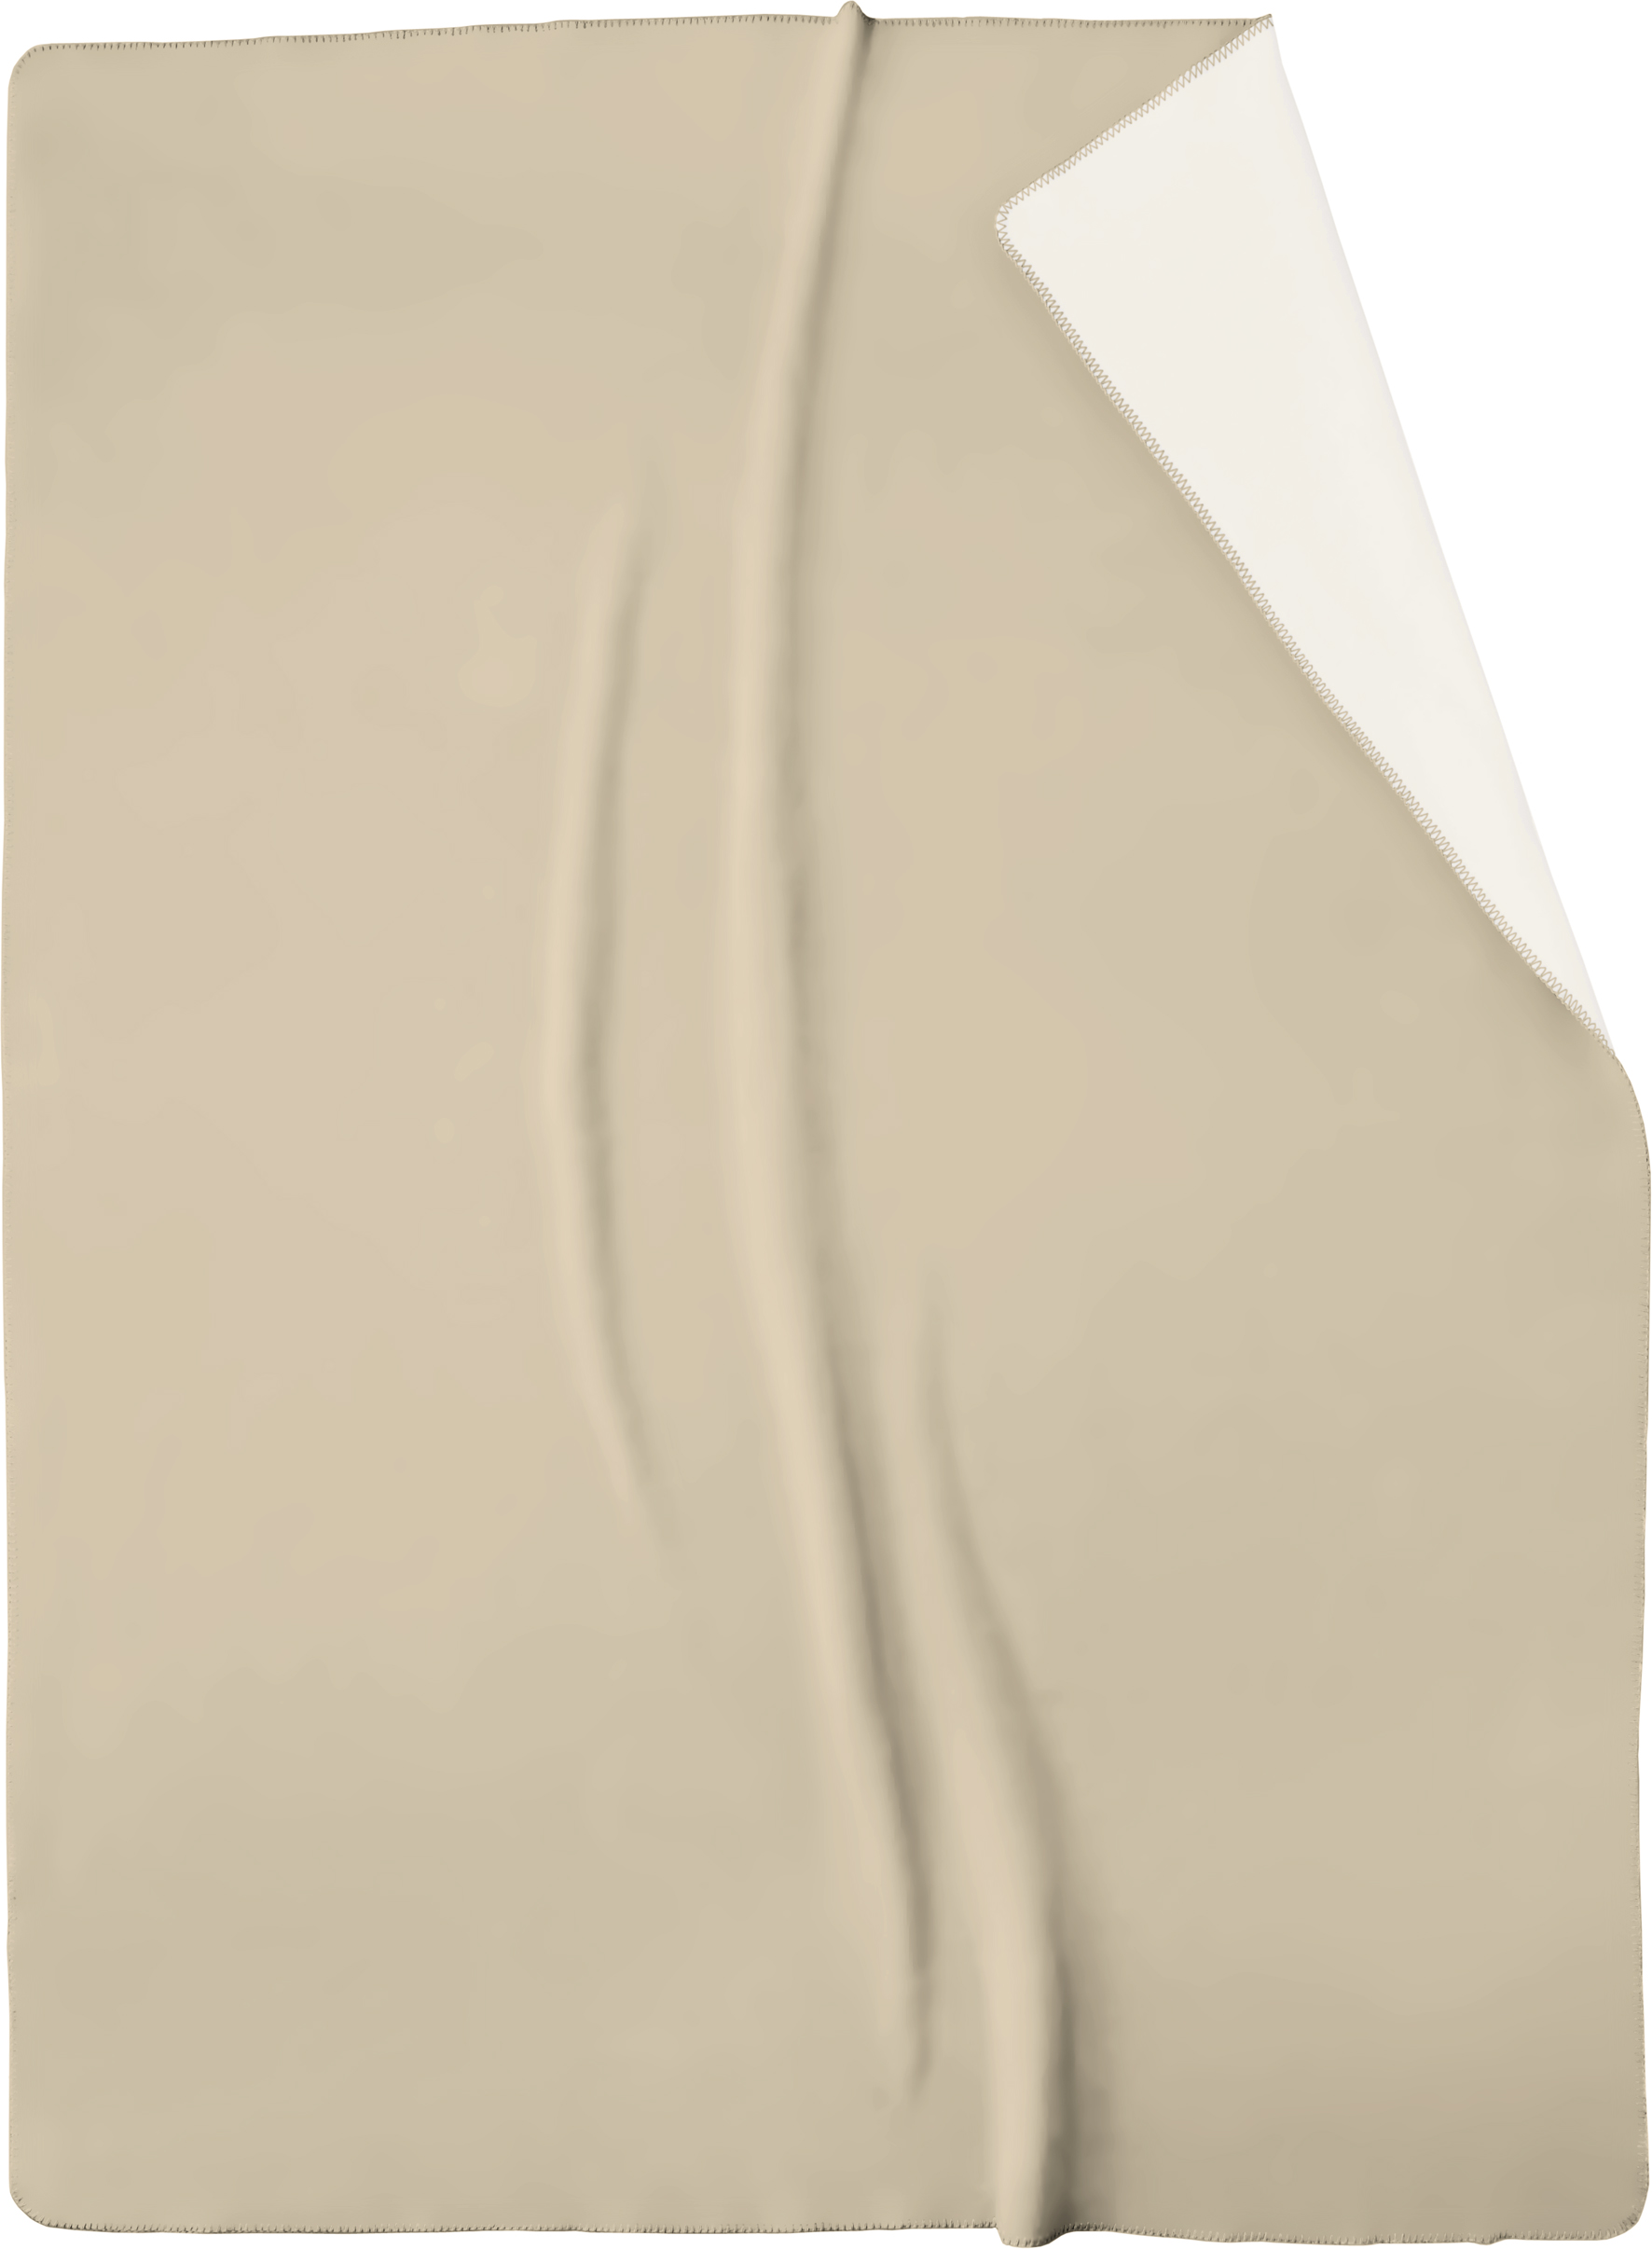 Schlichte Wohndecke "Duo Cotton" aus Baumwollmischgewebe in 150x200 cm in Oasis-Ecru - Freisteller